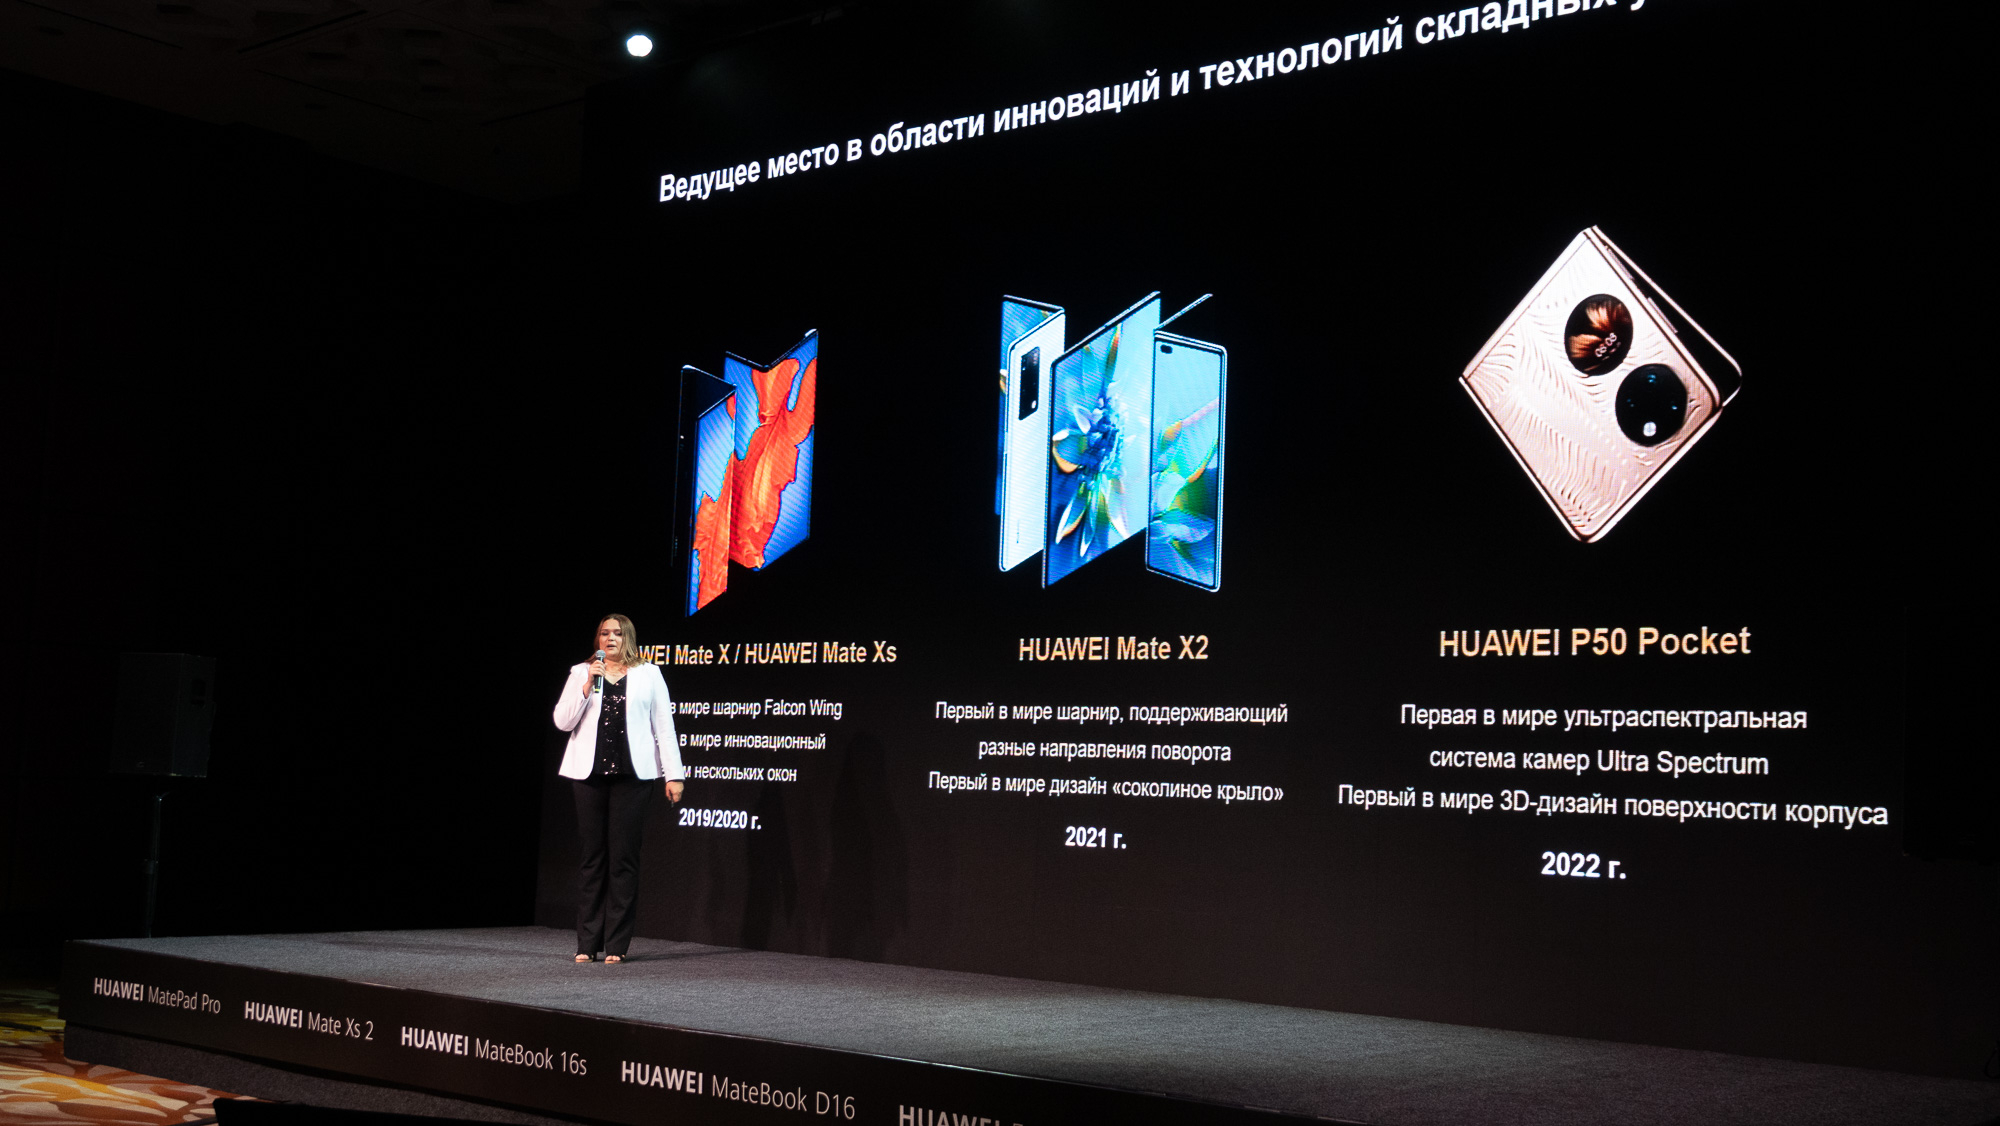 Huawei, MDB ölkələri üçün HUAWEI Mate Xs 2 flaqman smartfonunu və digər yenilikləri təqdim etdi